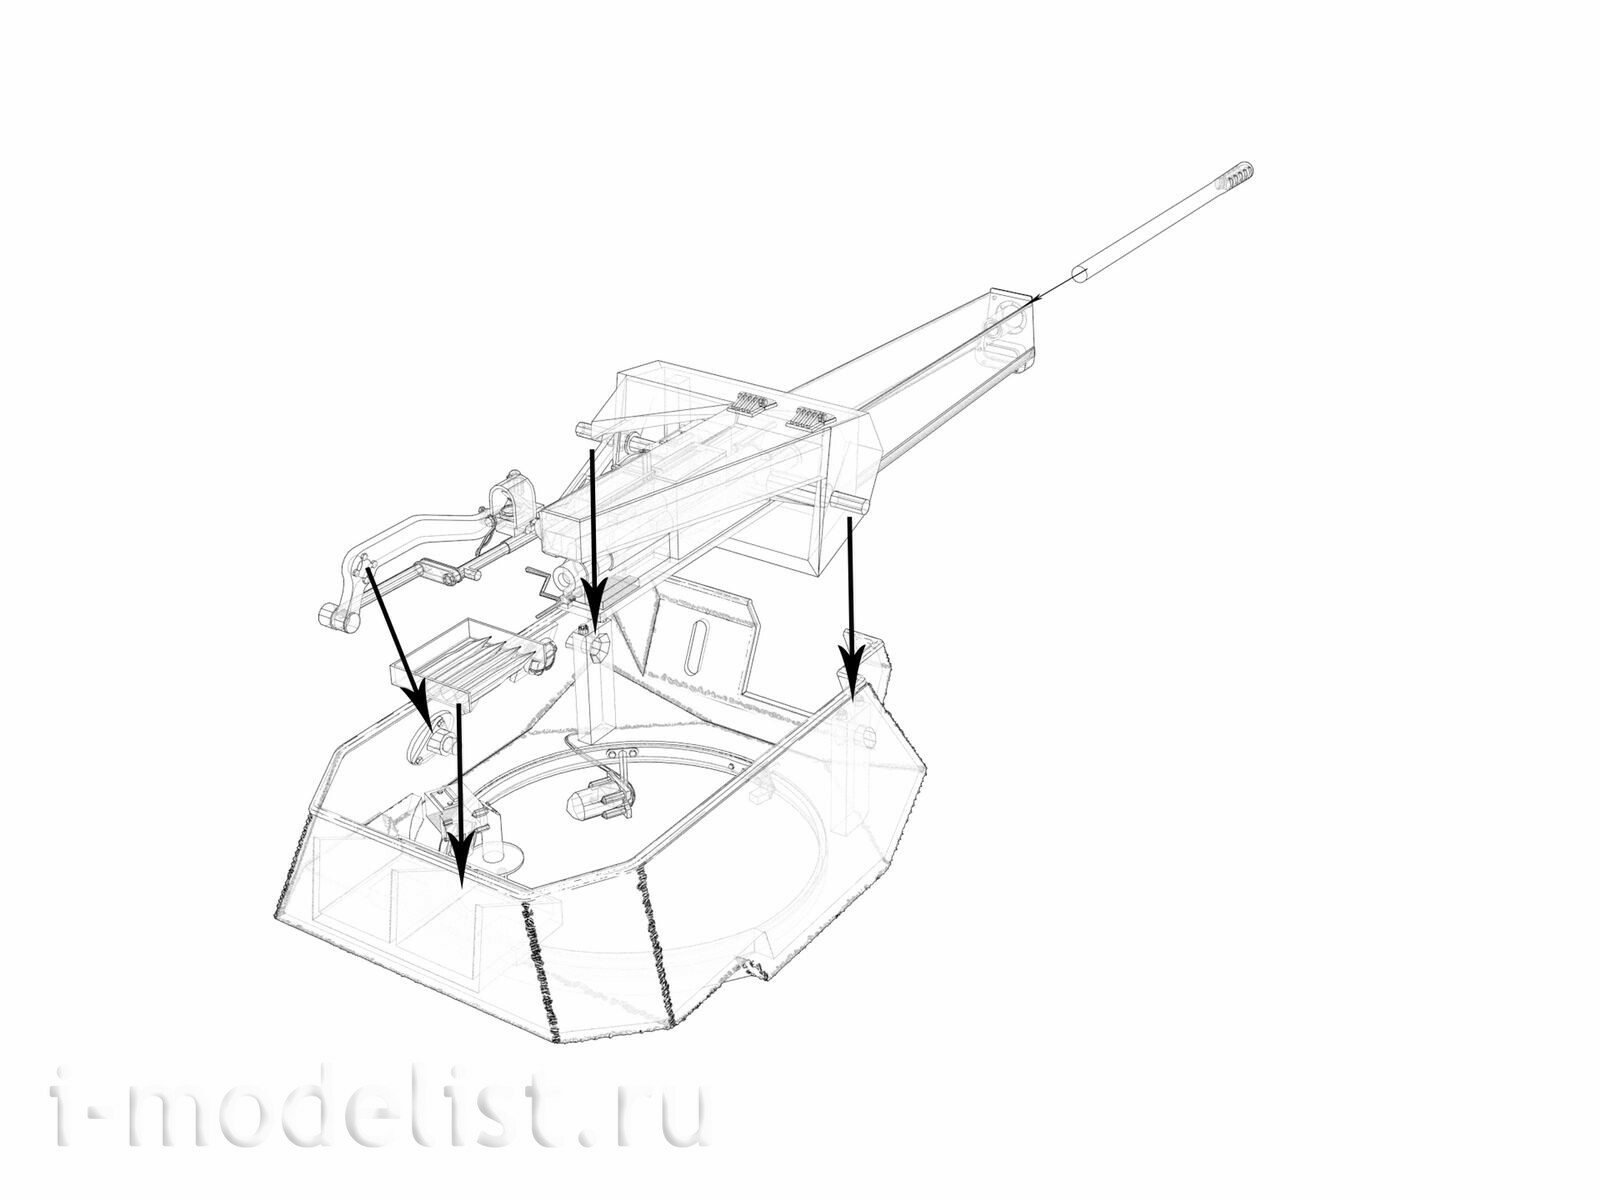 Im35102 DVC 1/35 Башня ЗУТ-37 для танка Т-70Б (Звезда)